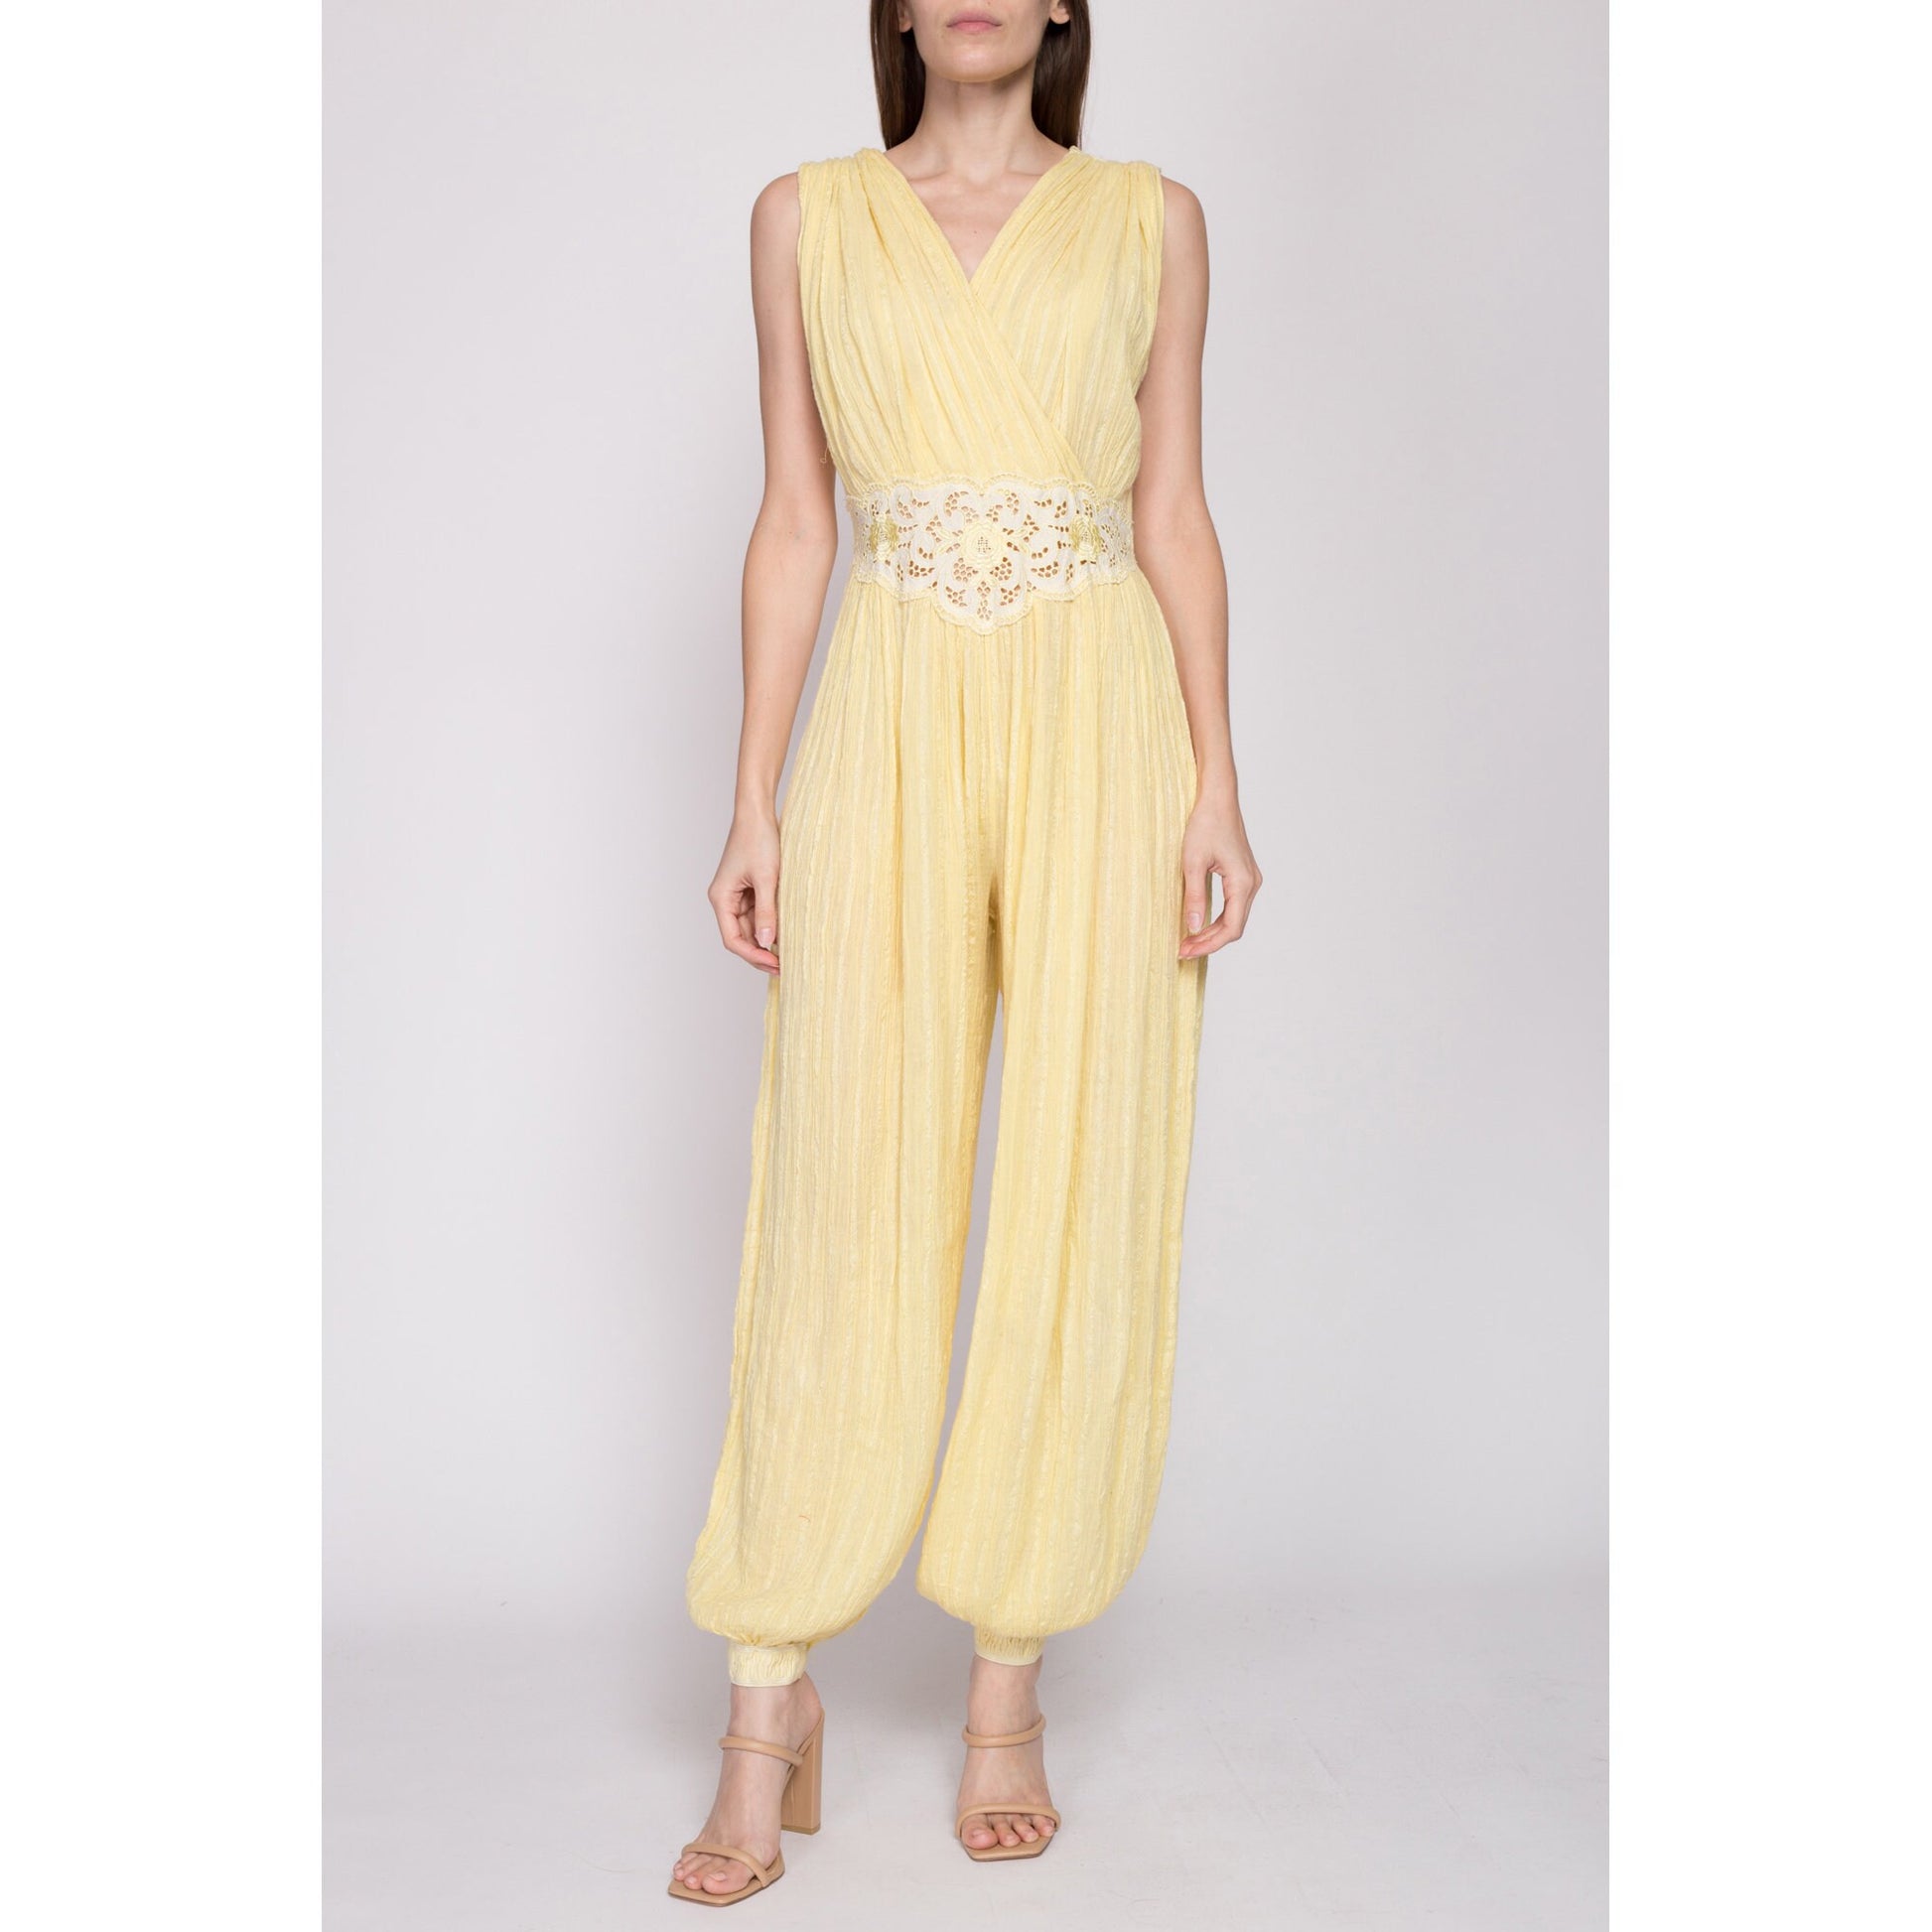 Sm-Med 70s Boho Yellow Gauzy Cotton Harem Jumpsuit | Vintage Floral Cut Out Grecian Hippie Pantsuit Genie Outfit